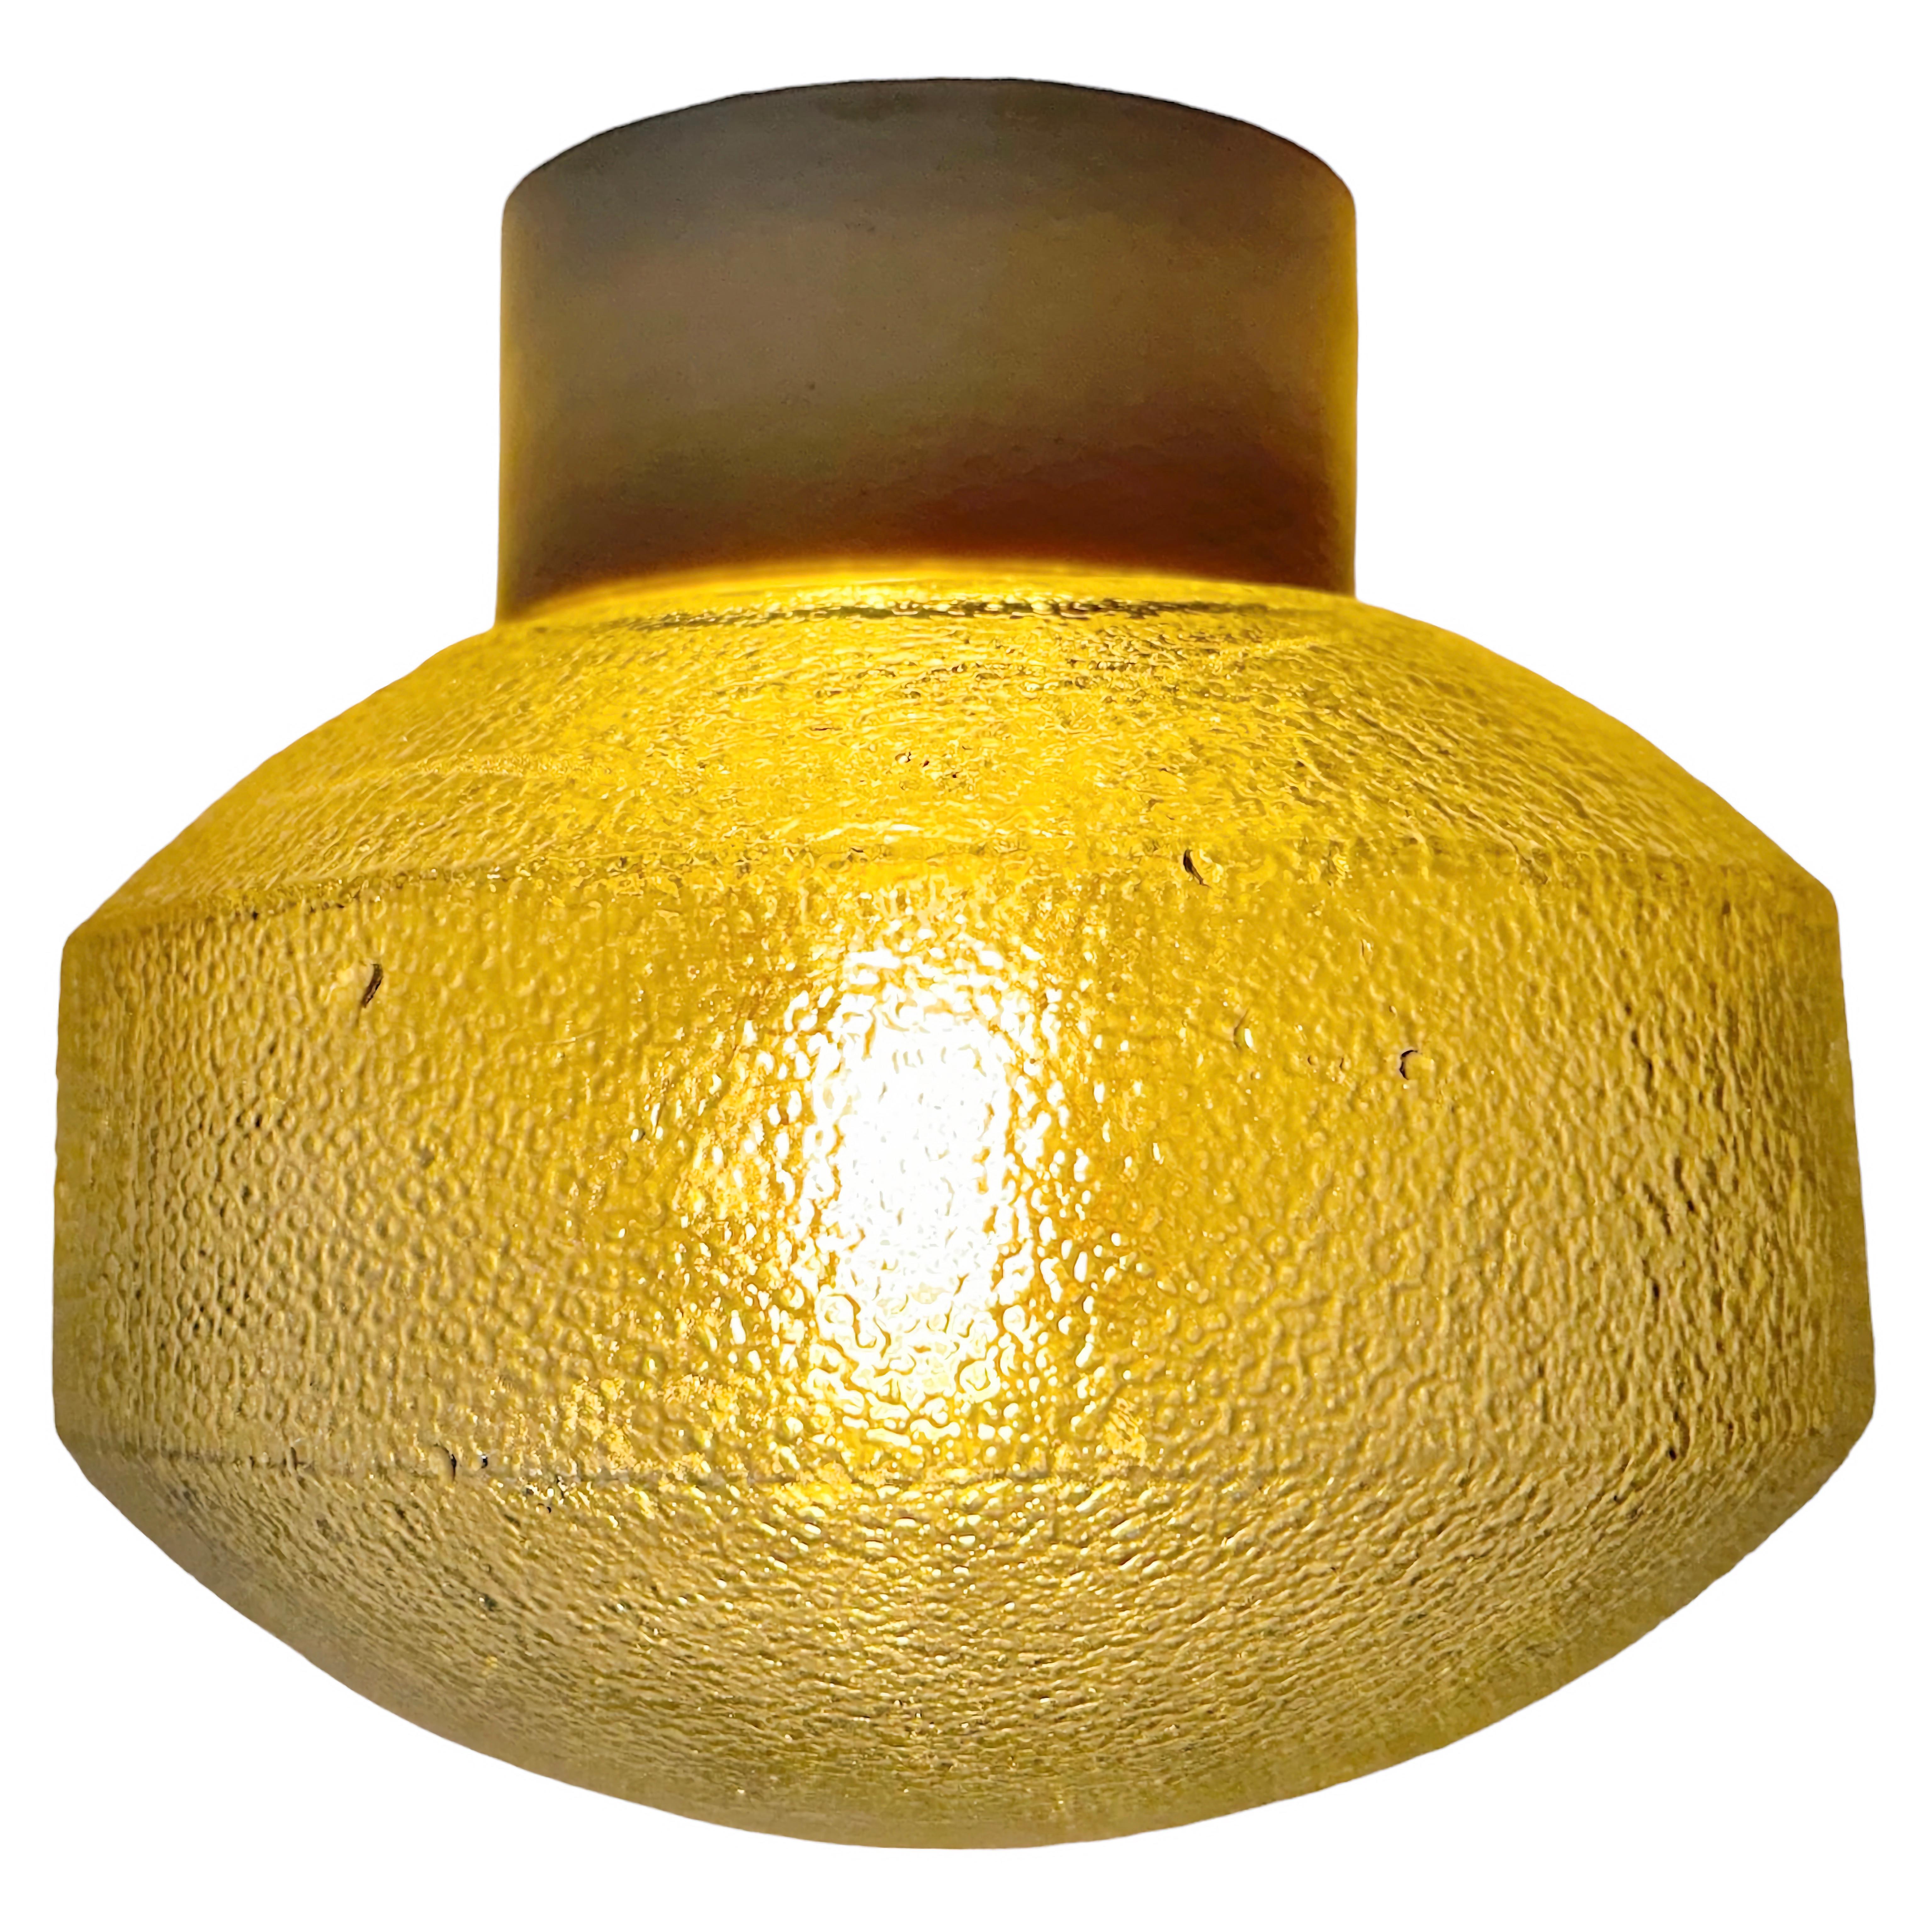 Lampe industrielle vintage fabriquée en Pologne dans les années 1970. Elle est dotée d'une fixation au plafond en porcelaine blanche et d'un couvercle en verre dépoli. La douille est compatible avec les ampoules E27/E 26. Un nouveau fil. Le poids de